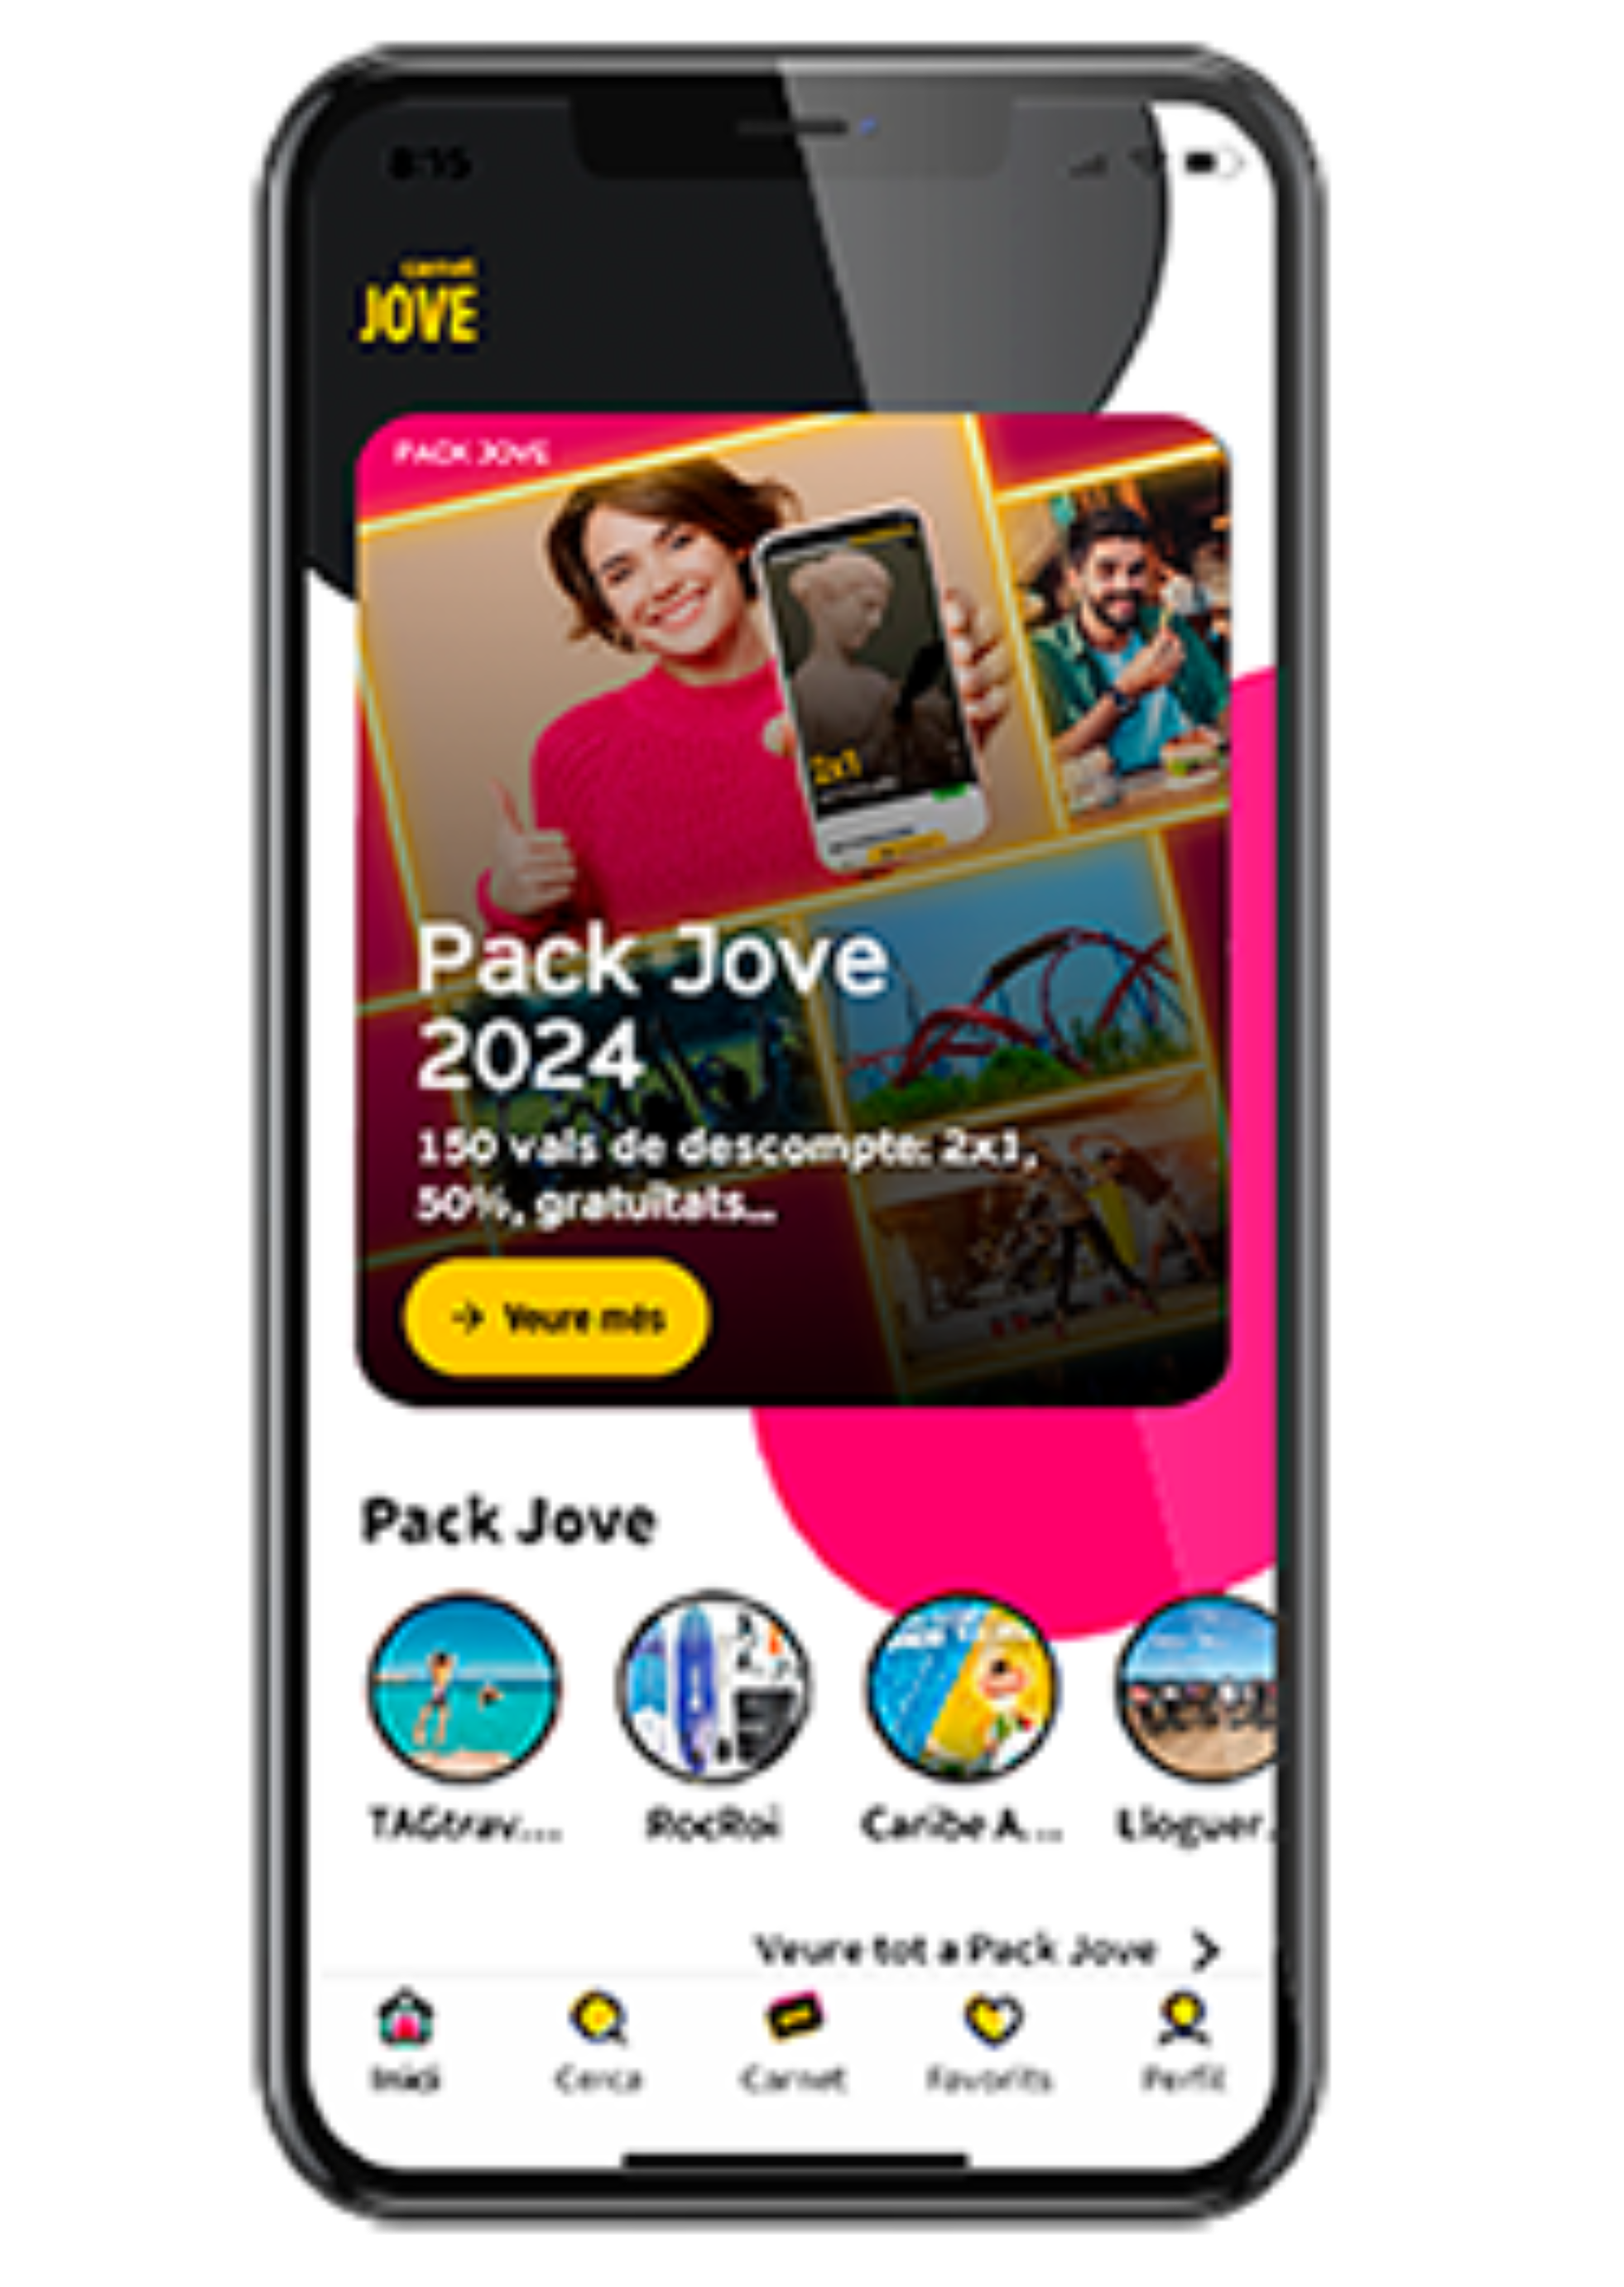 Pack Jove 2024 a l'app del Carnet Jove